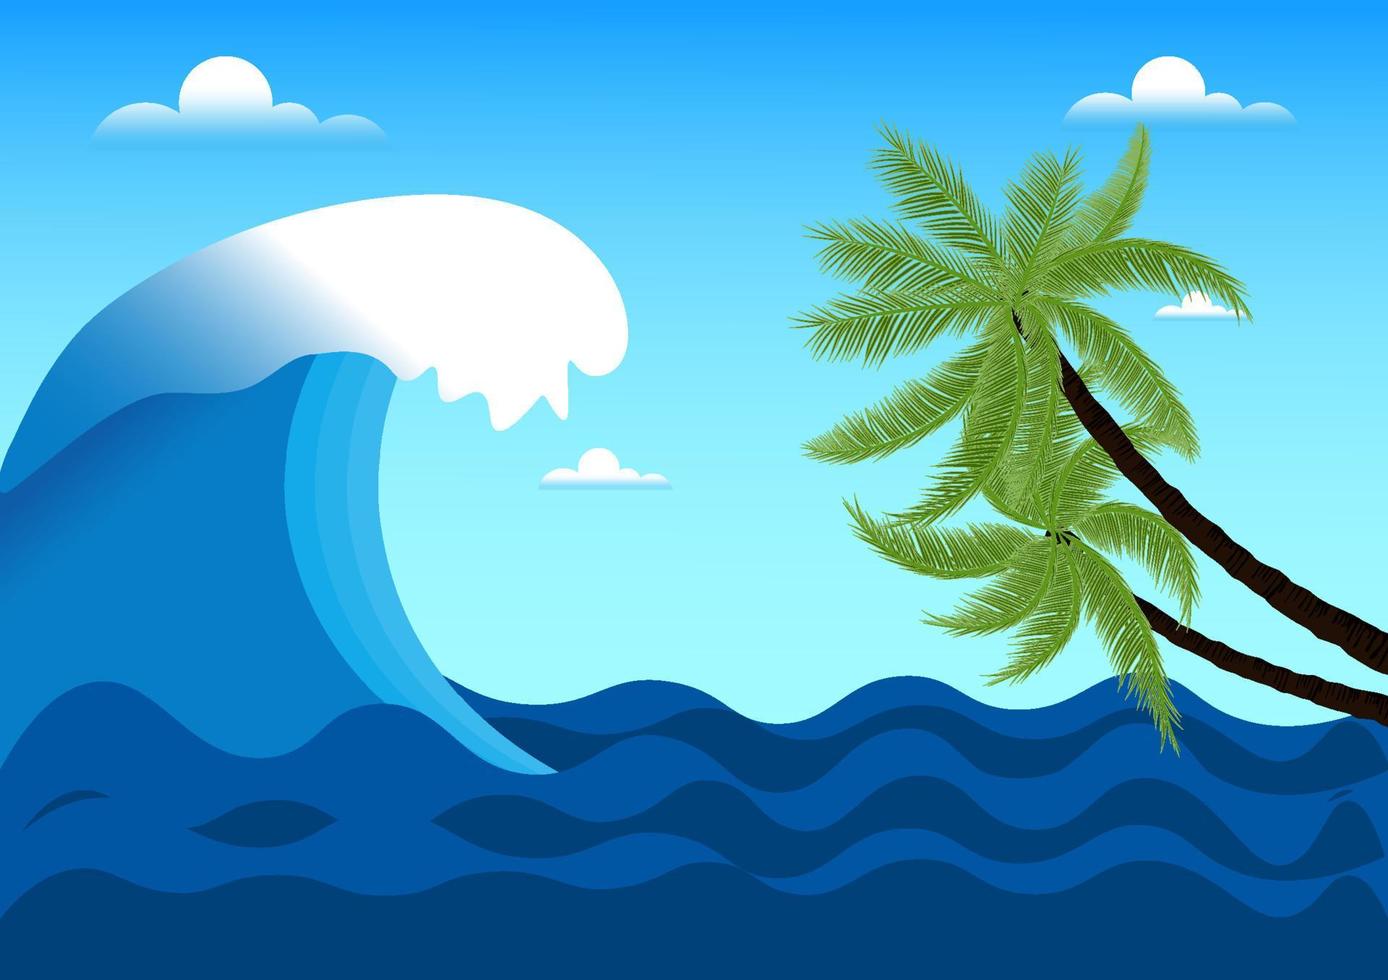 Grafikdesign-Zeichnung Ozeanwelle, Kokosnussbaum-Vektorillustration vektor